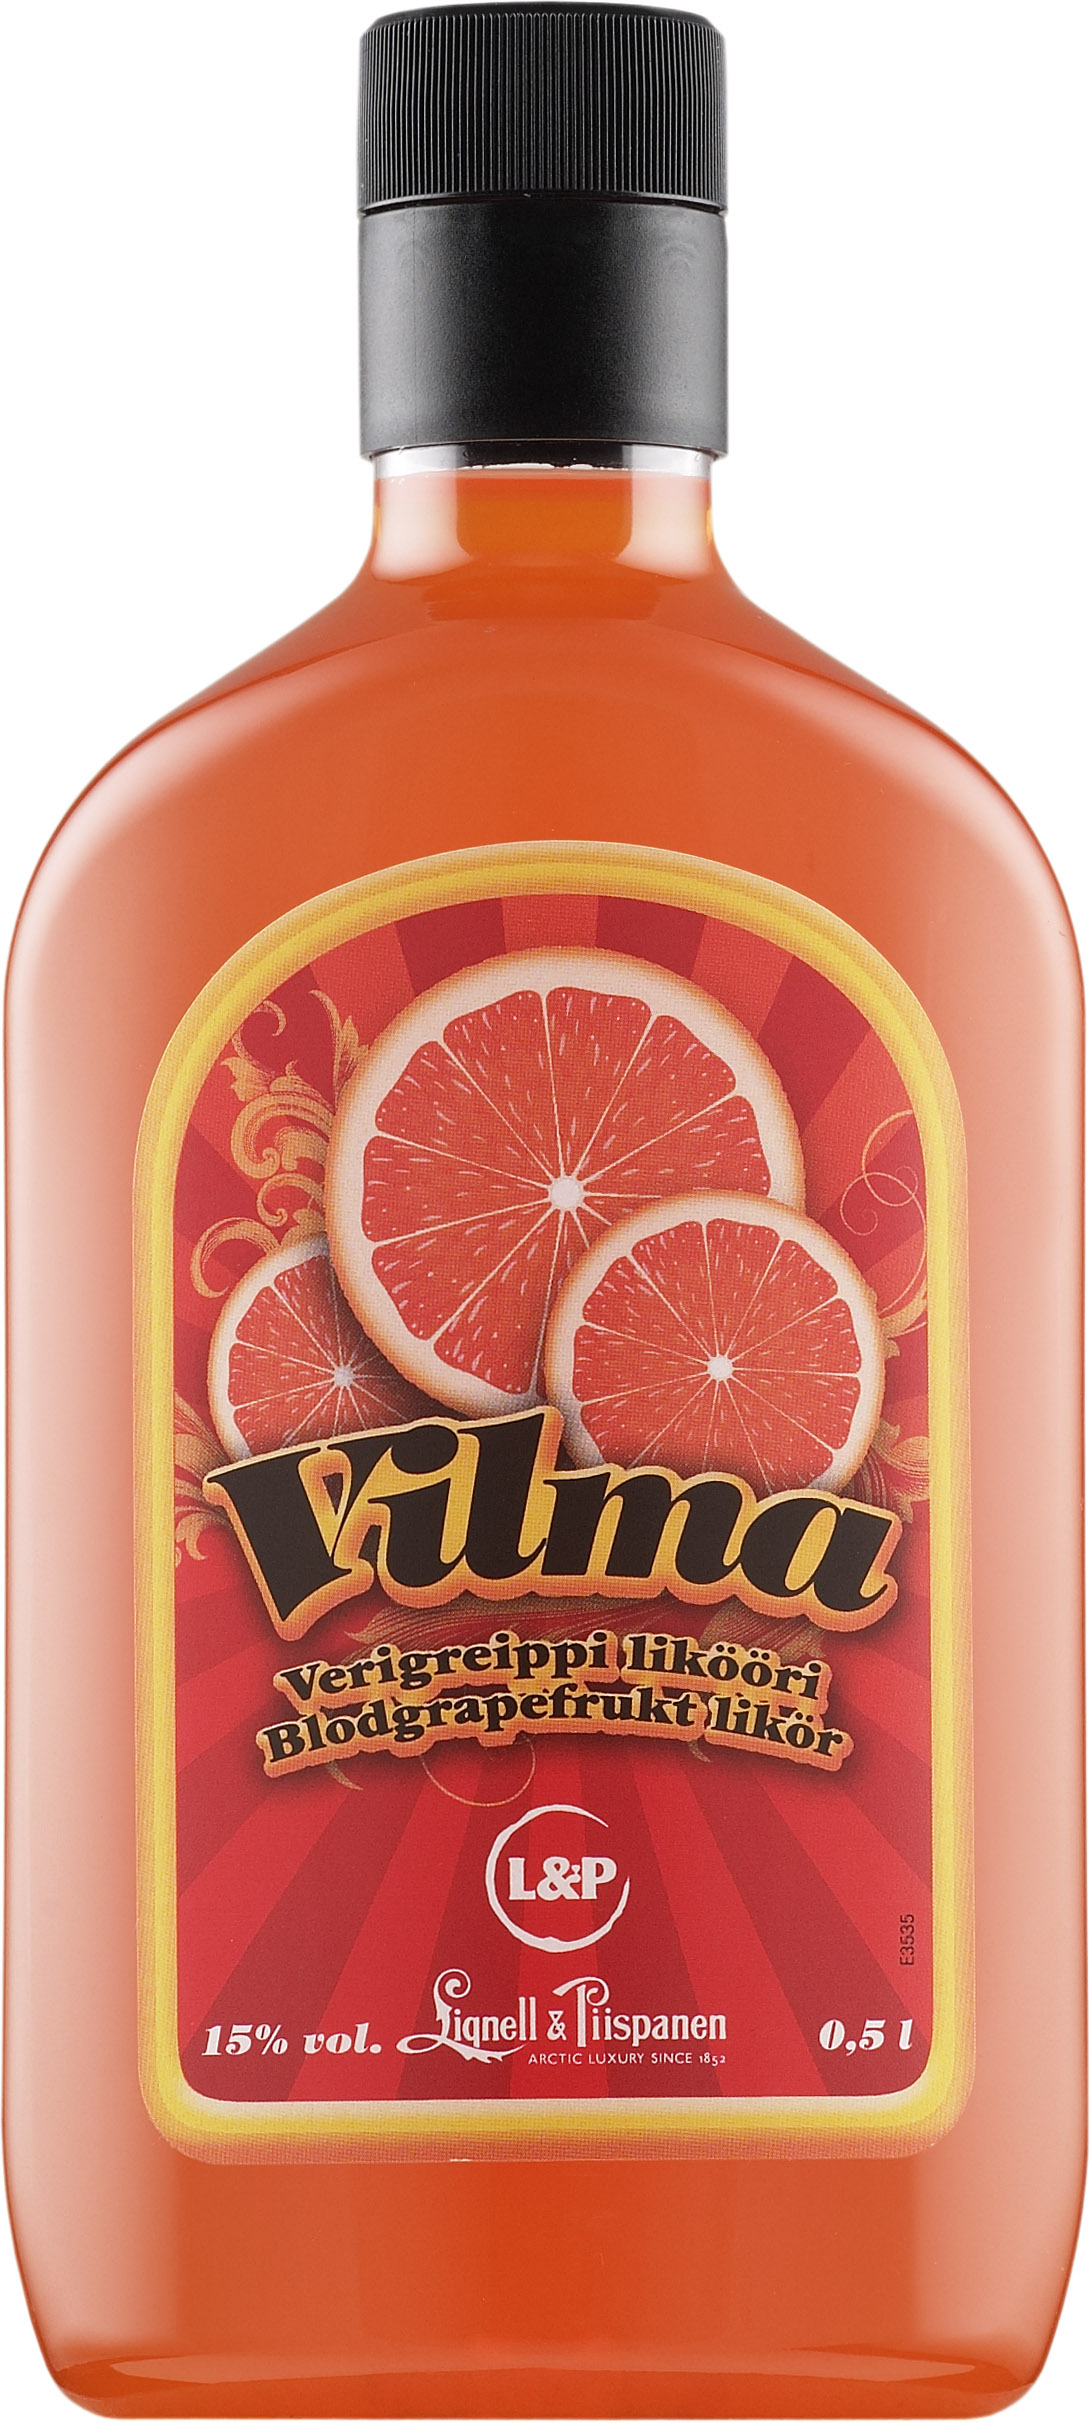 Vilma Verigreippi plastic bottle